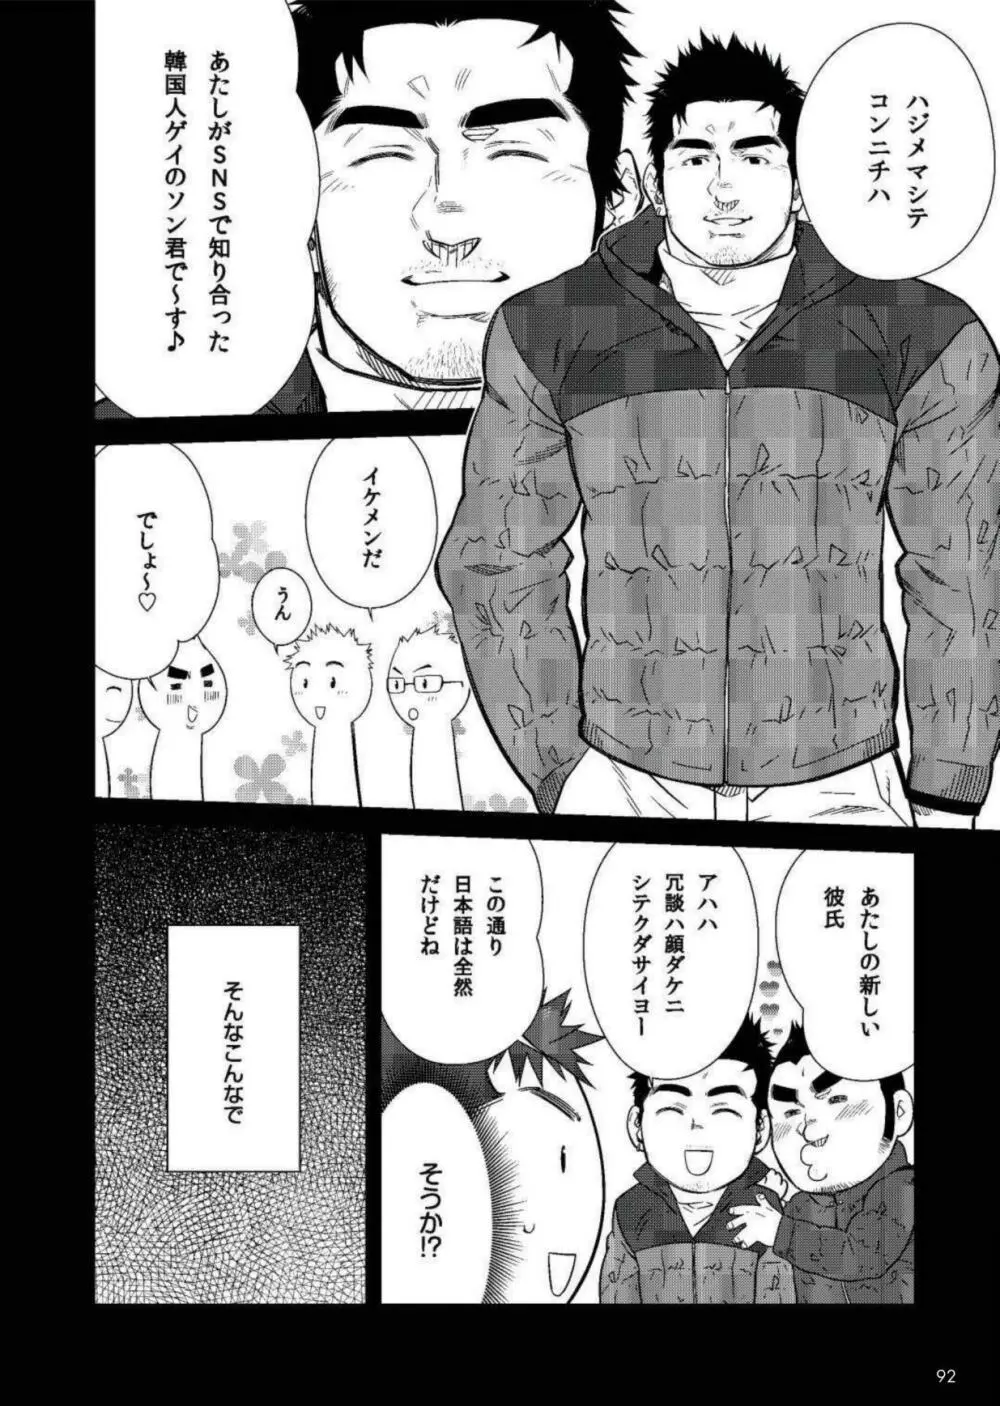 Terujirou - 晃次郎 - Badi Bʌ́di (バディ) 119 (Jan 2016) Page.2